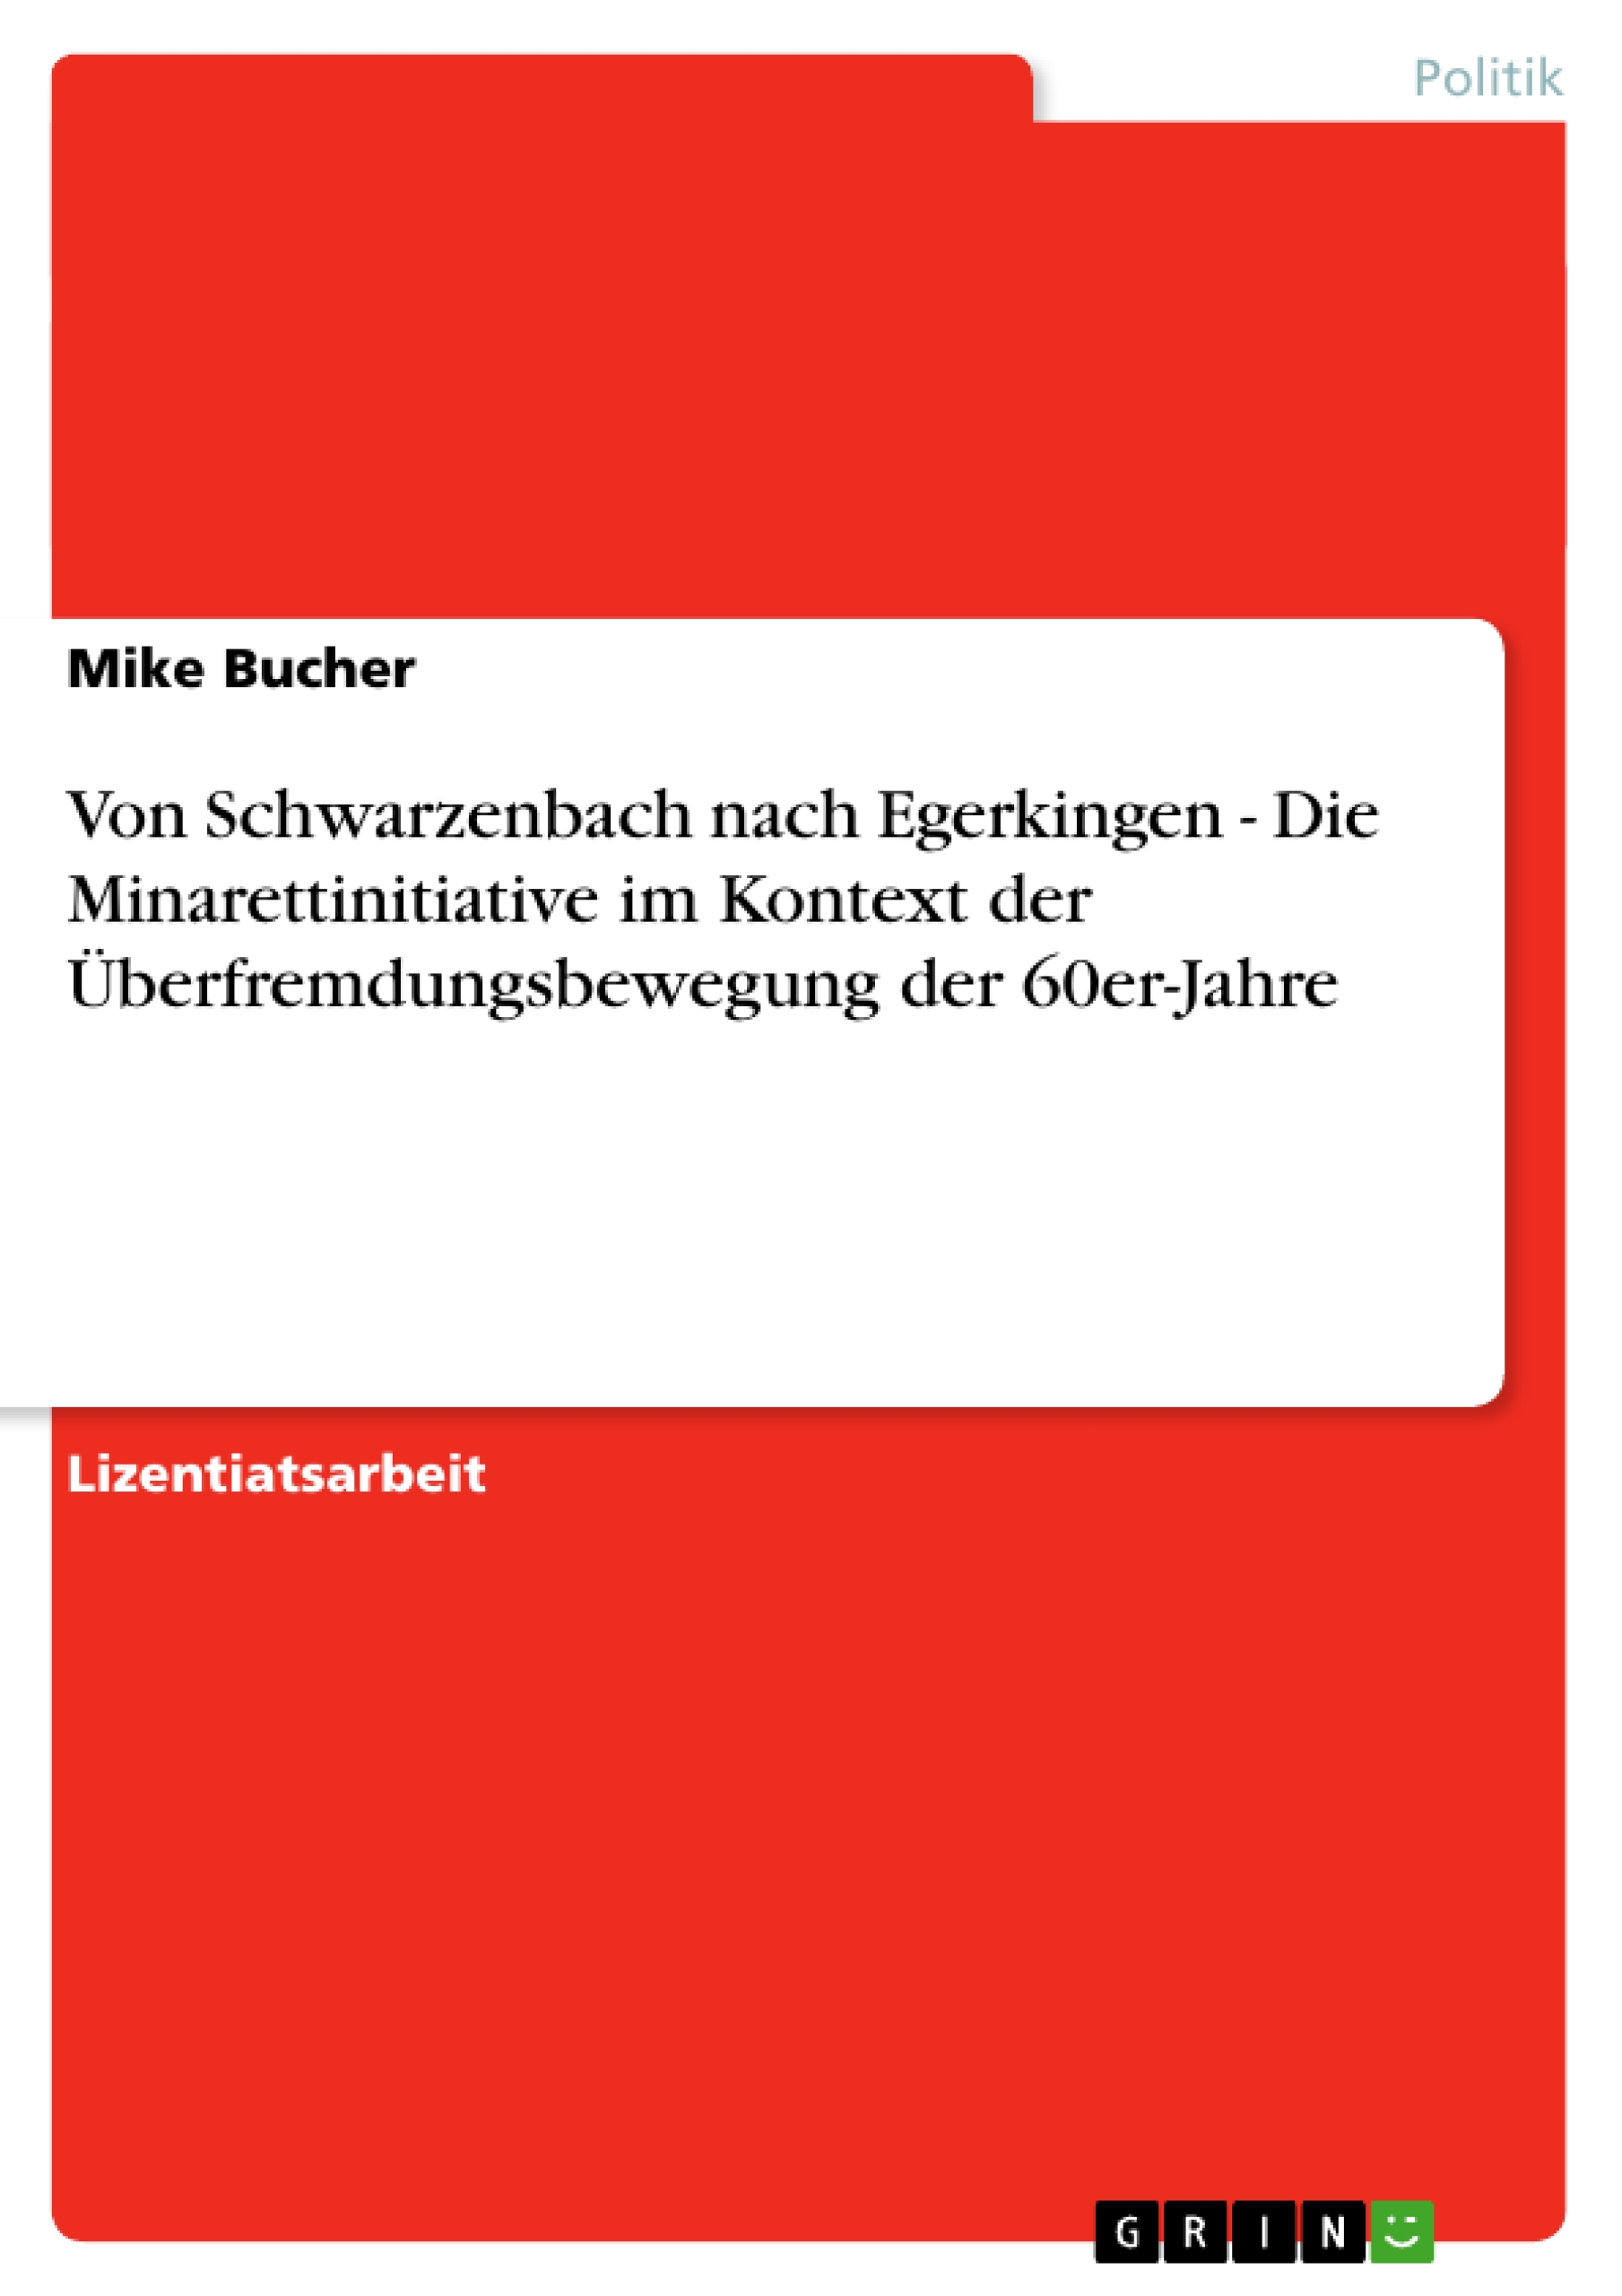 Von Schwarzenbach nach Egerkingen - Die Minarettinitiative im Kontext der Ueberfremdungsbewegung der 60er-Jahre - Bucher, Mike